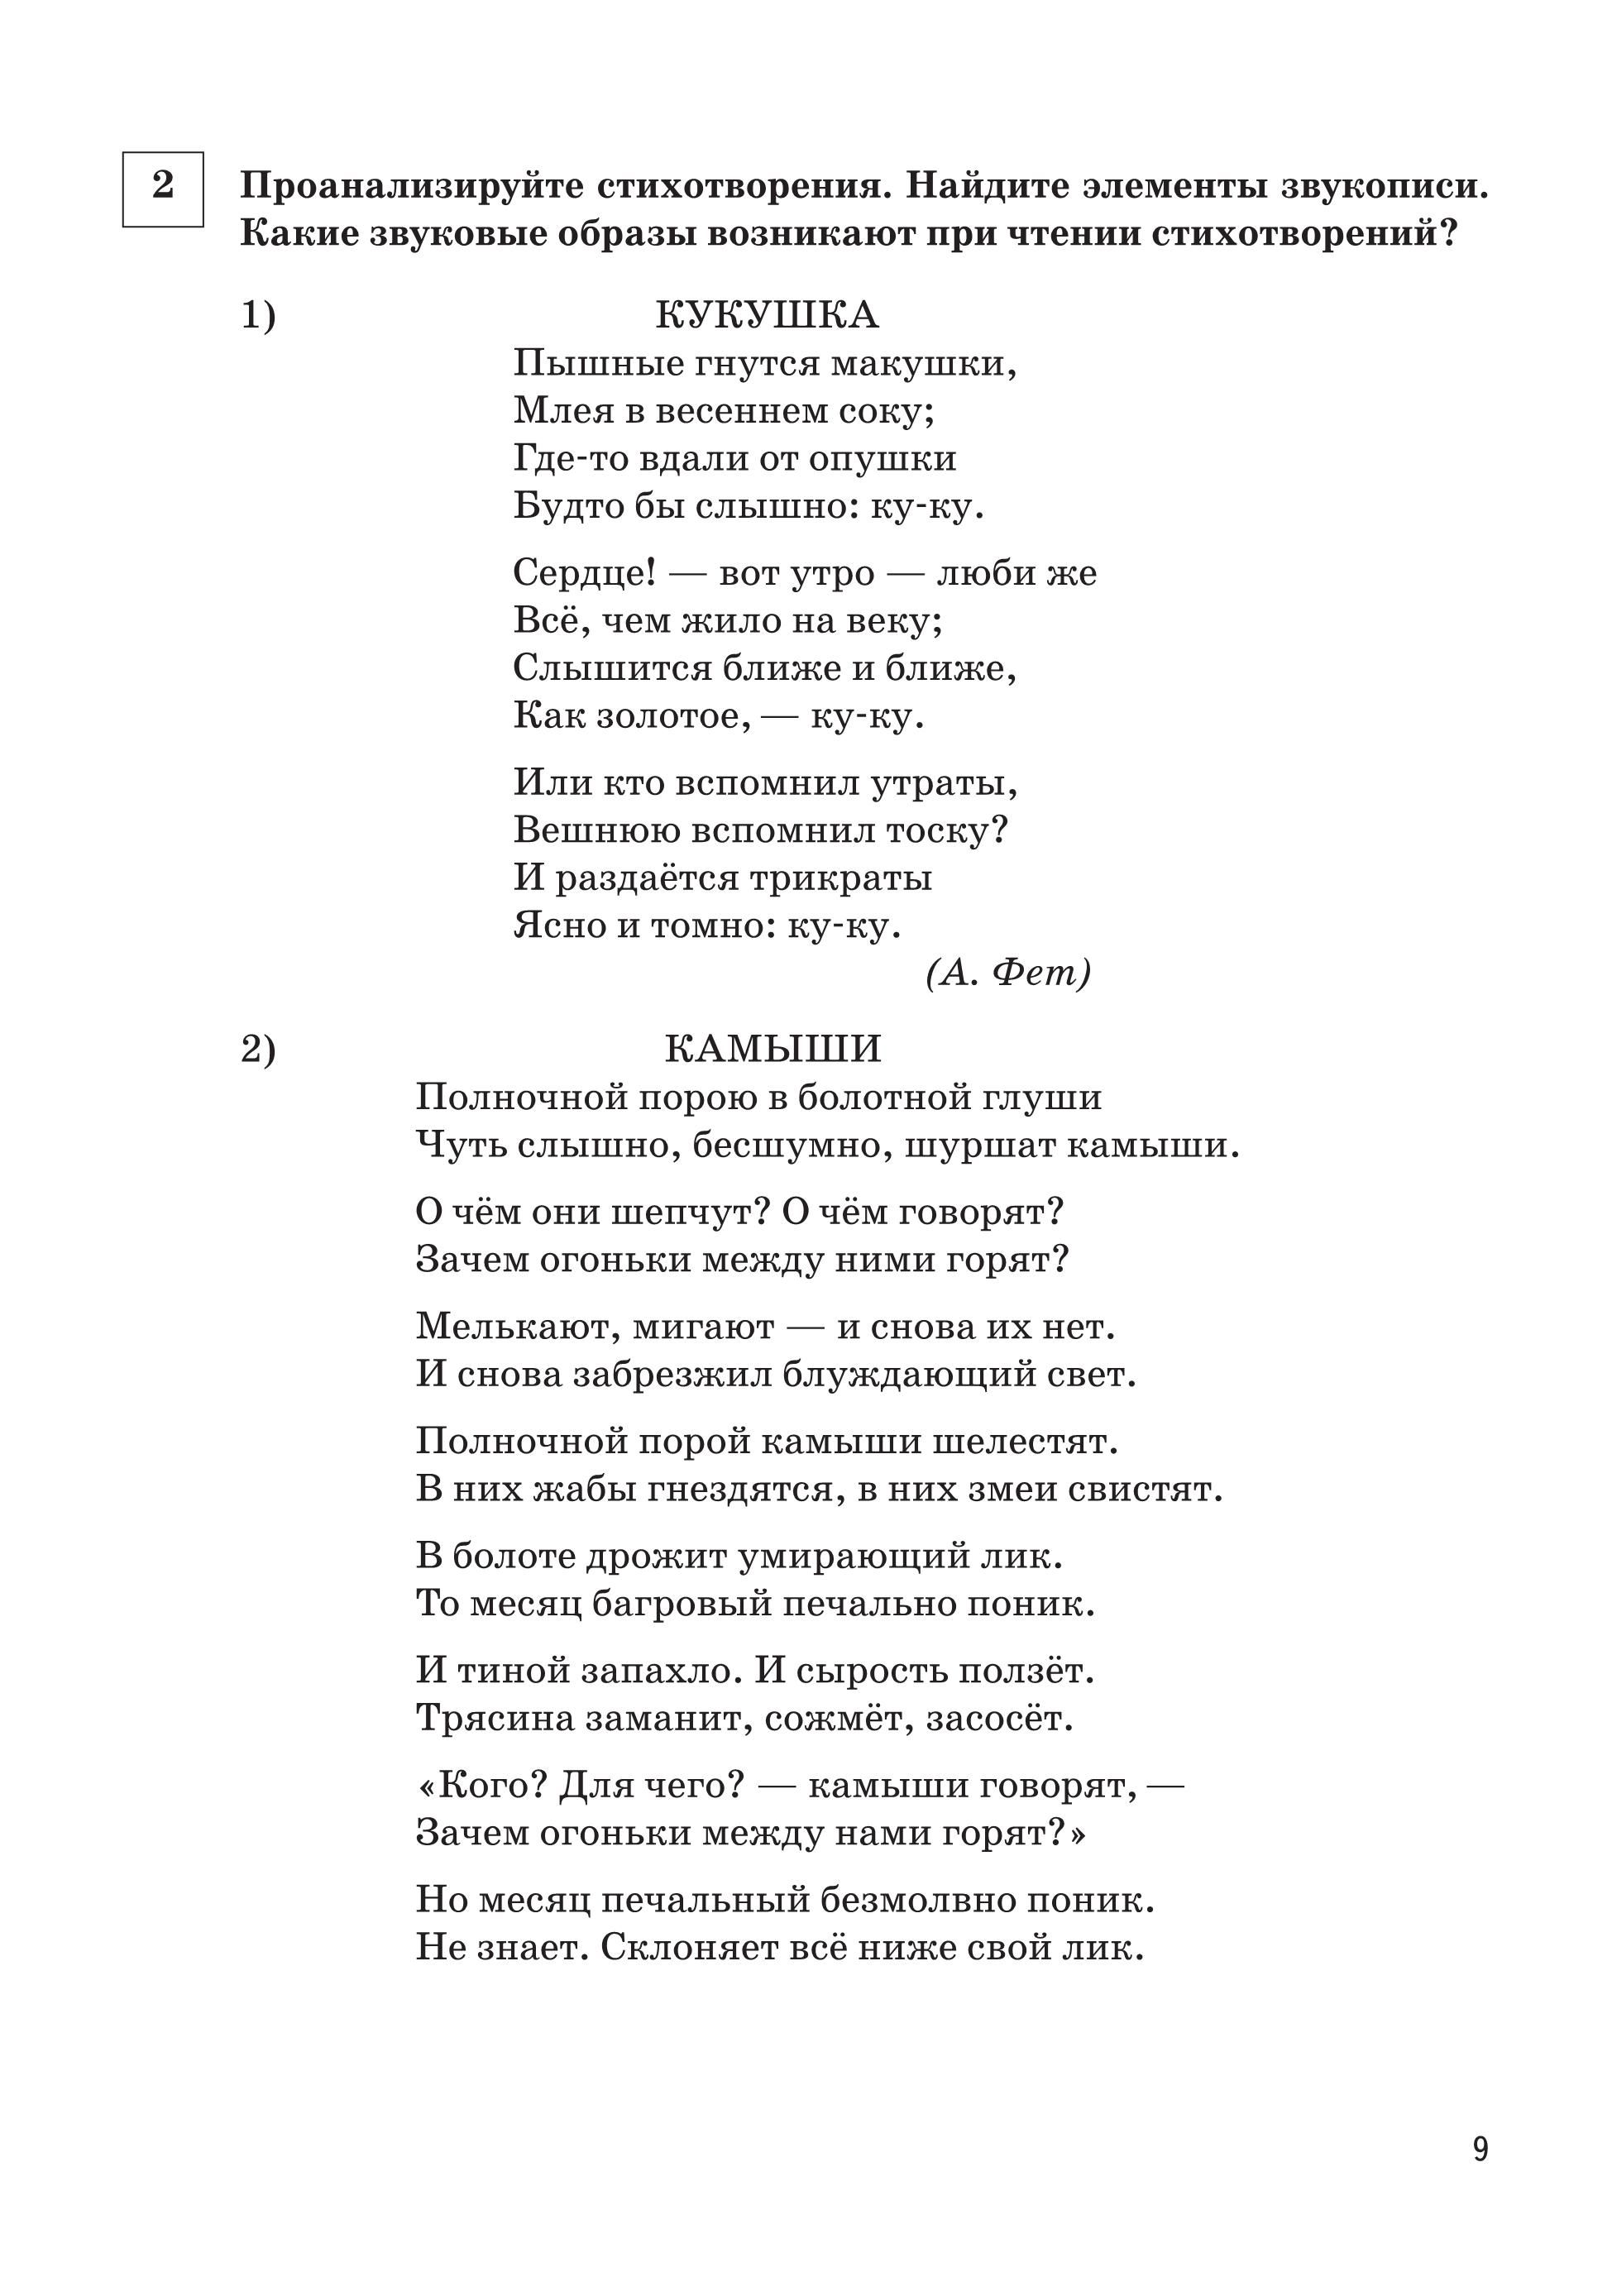 Русский язык. Средства выразительности на ОГЭ и ЕГЭ. 3-е изд.